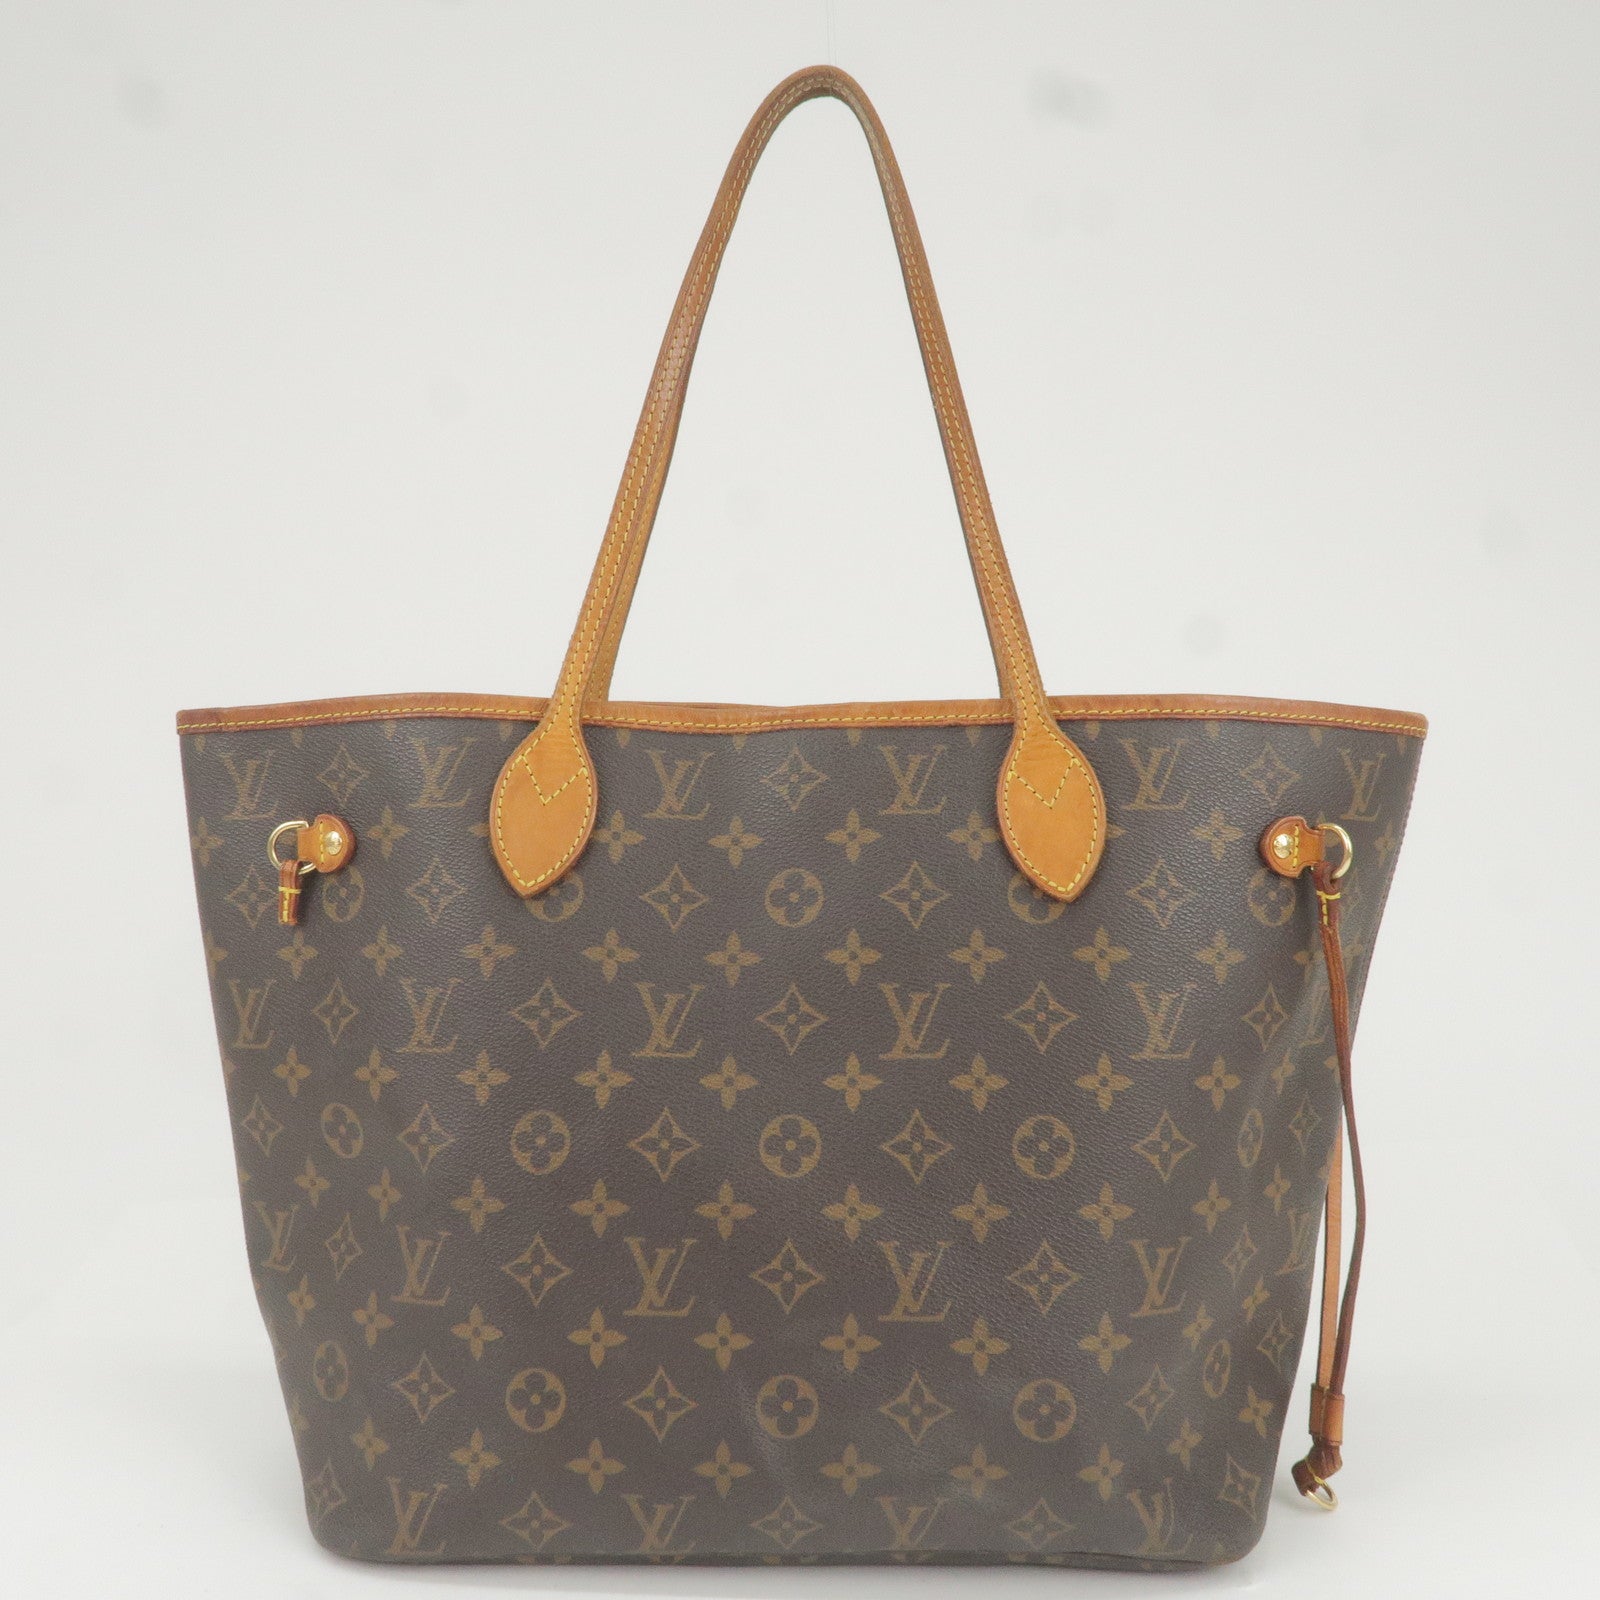 Stunning Louis Vuitton Handbag Designer Leather Monogram Bag -  Norway